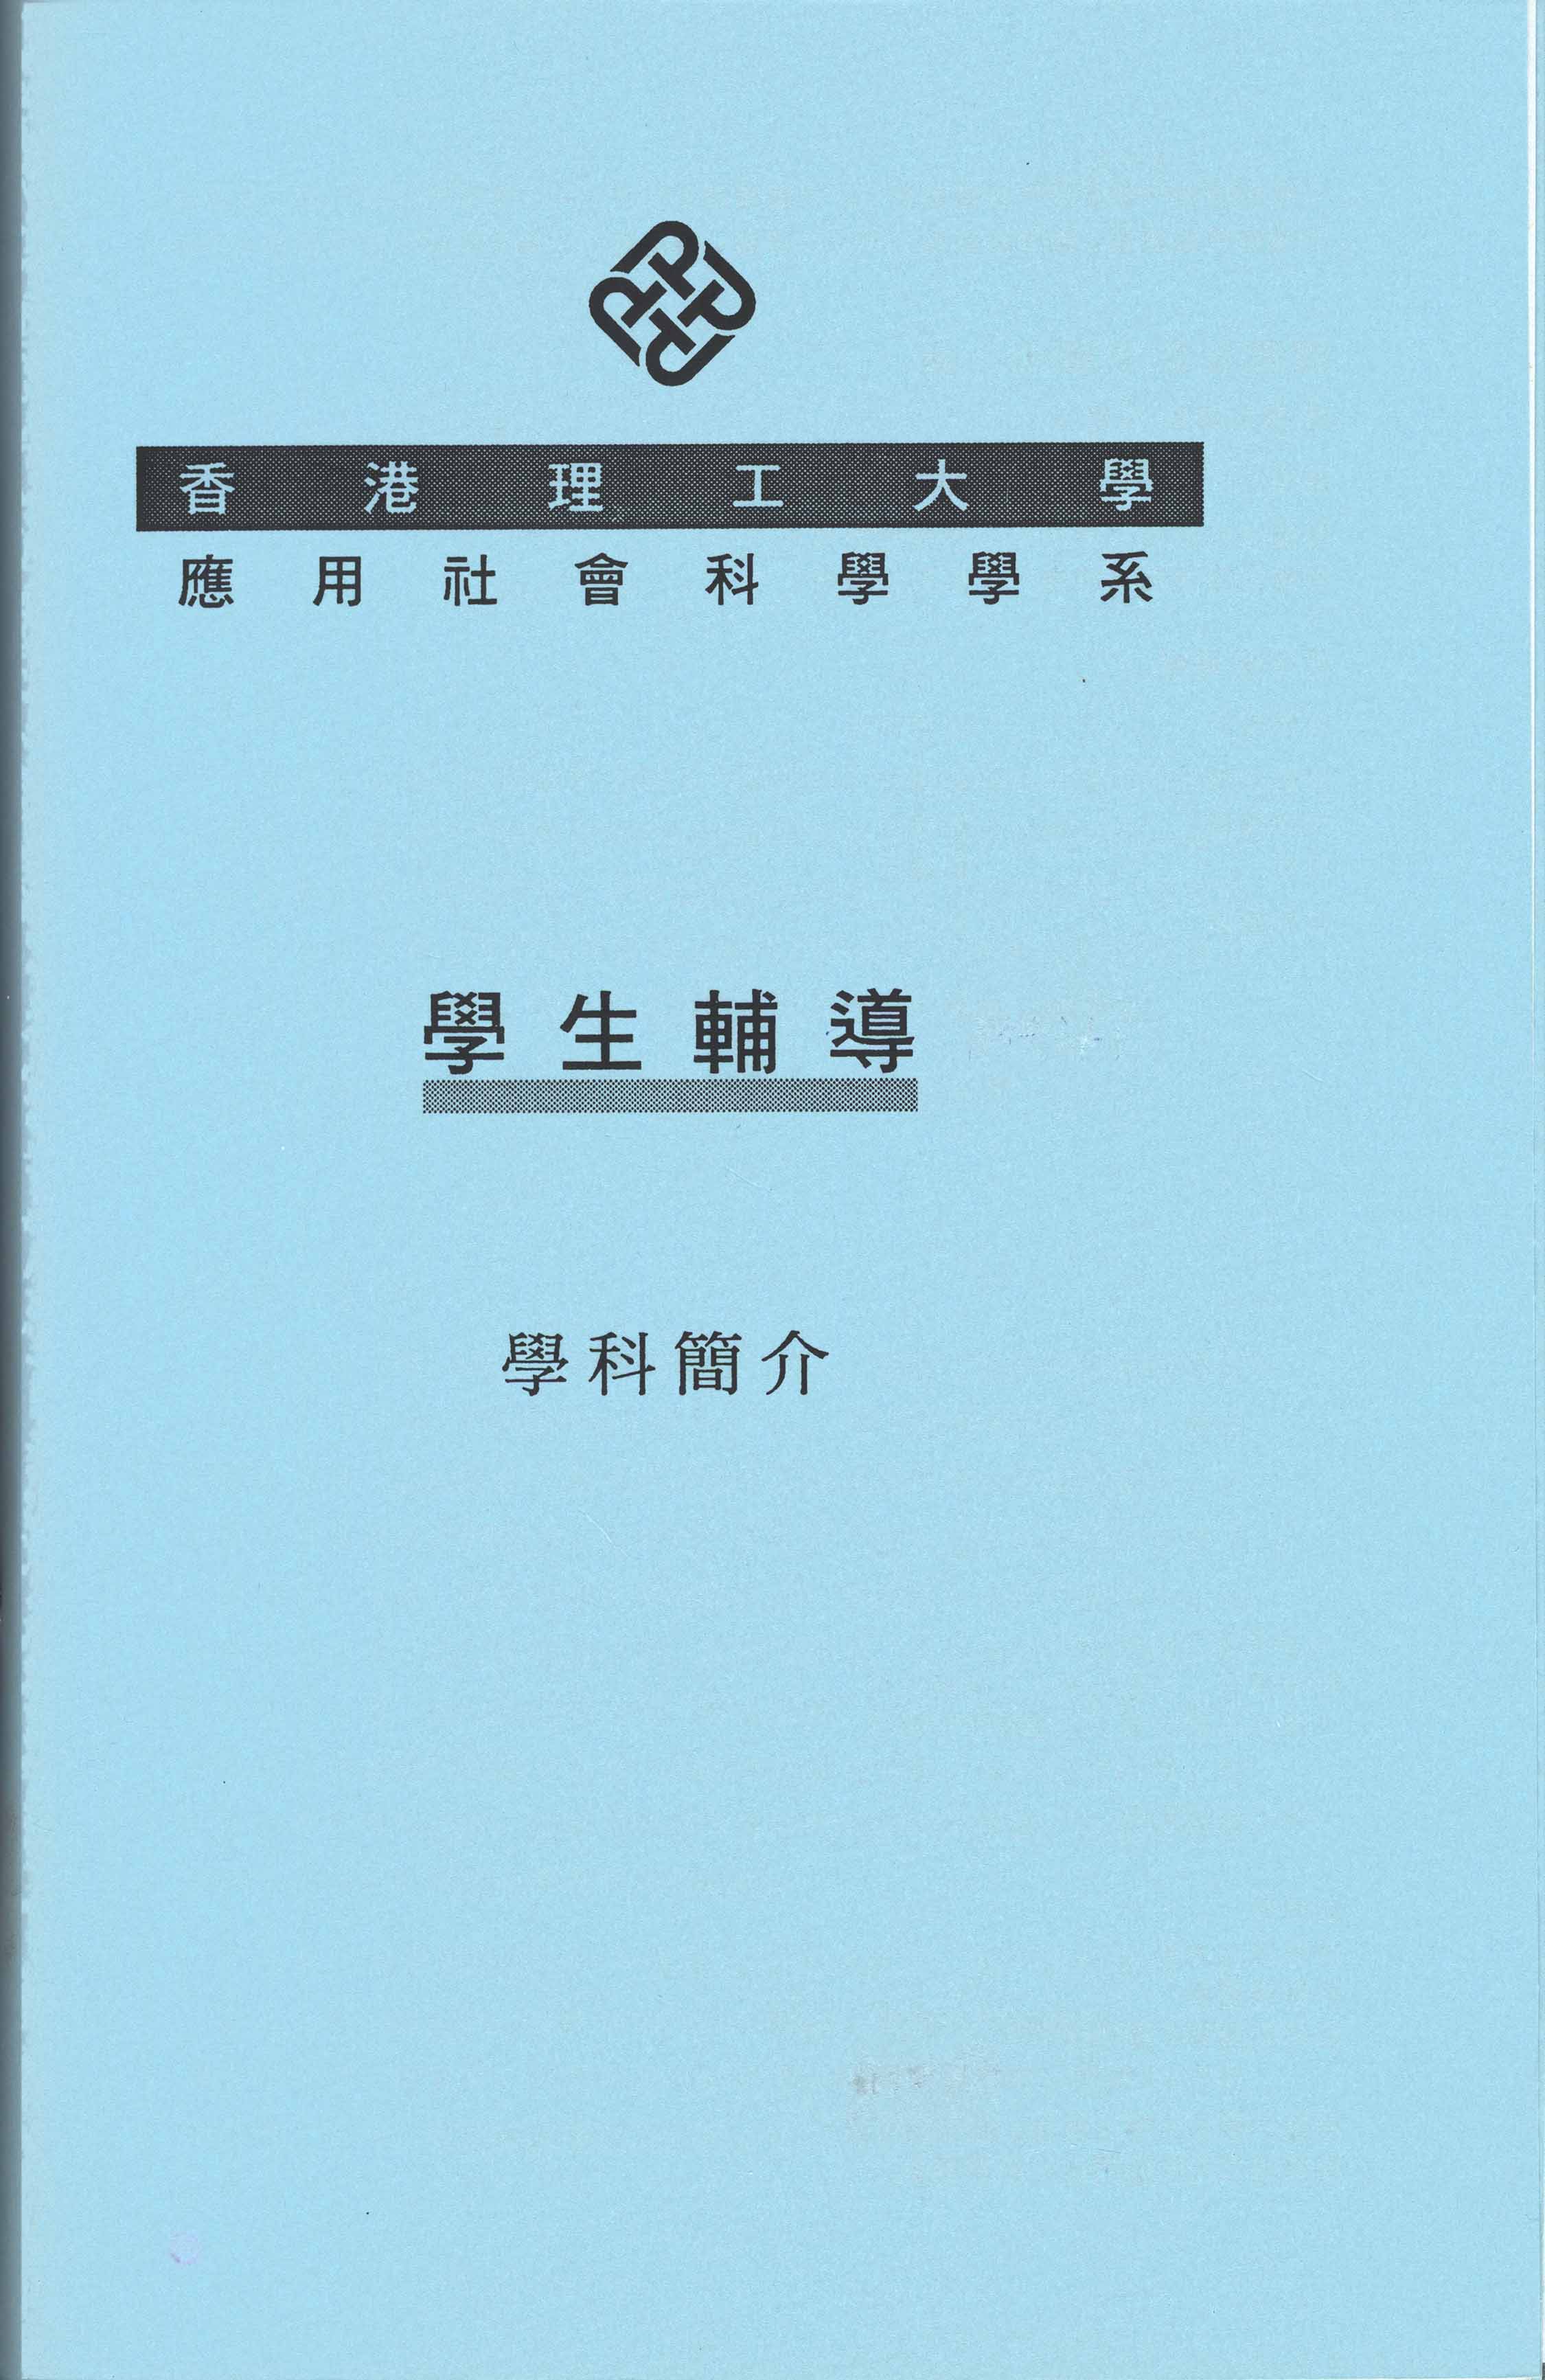 學科簡介. 5434, 學生輔導. 1995/96